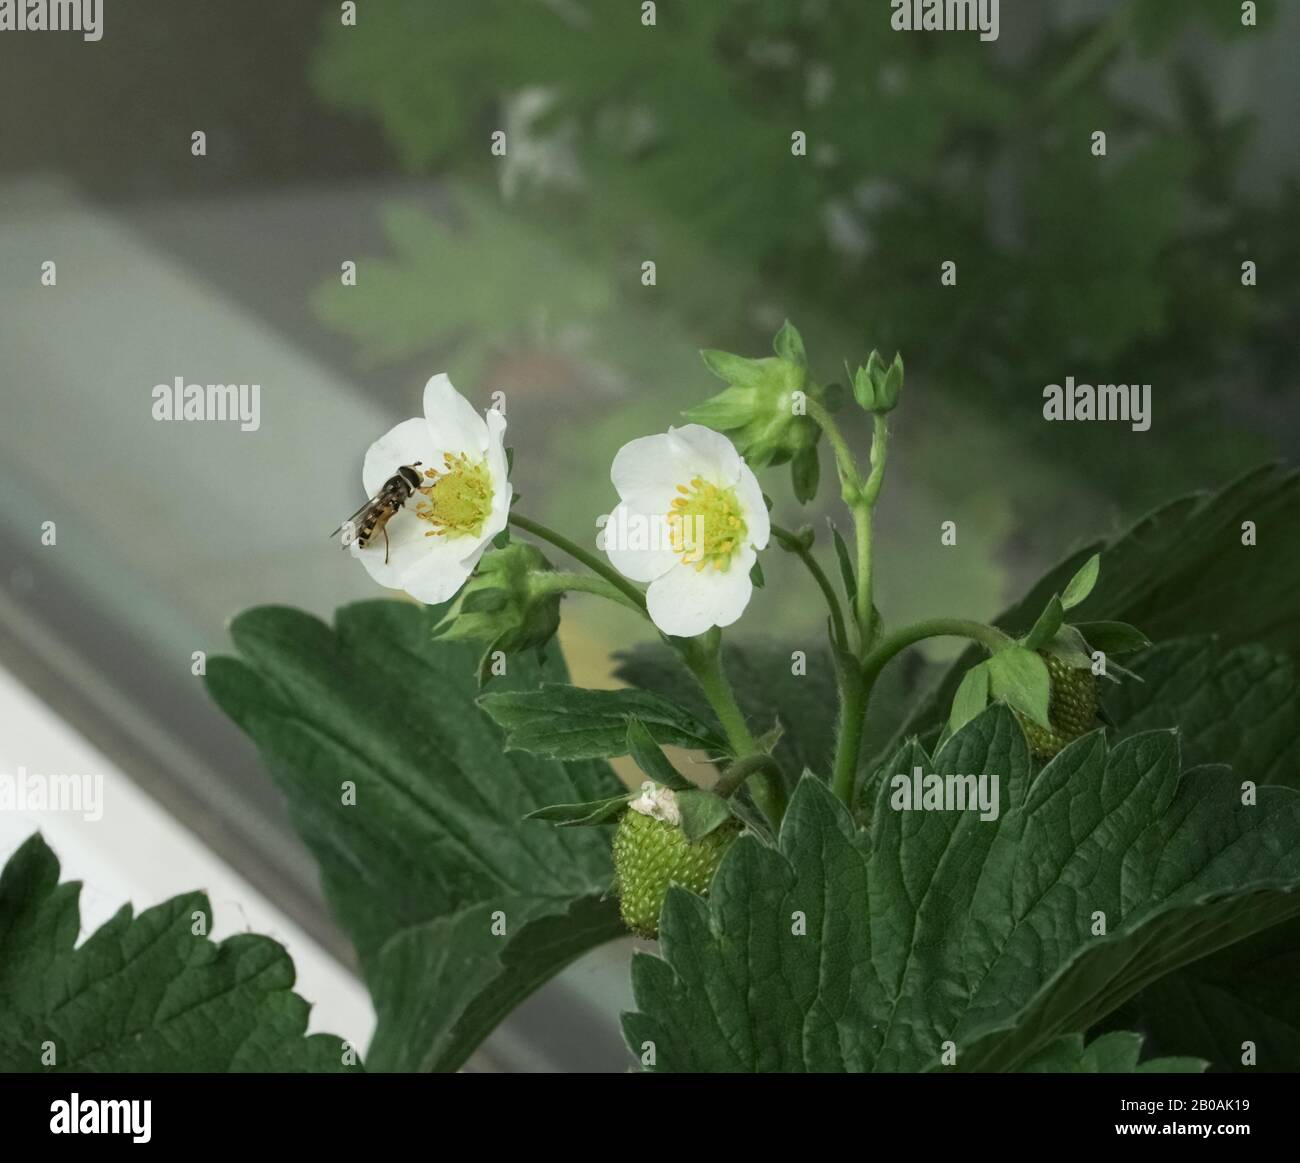 Das geflügelte Insekt der Wespen-Gattung auf einer weißen Blume der Erdbeerpflanze. Gartenbau - blühende Beerenpflanzen zu Hause auf der Fensterbank. Stockfoto